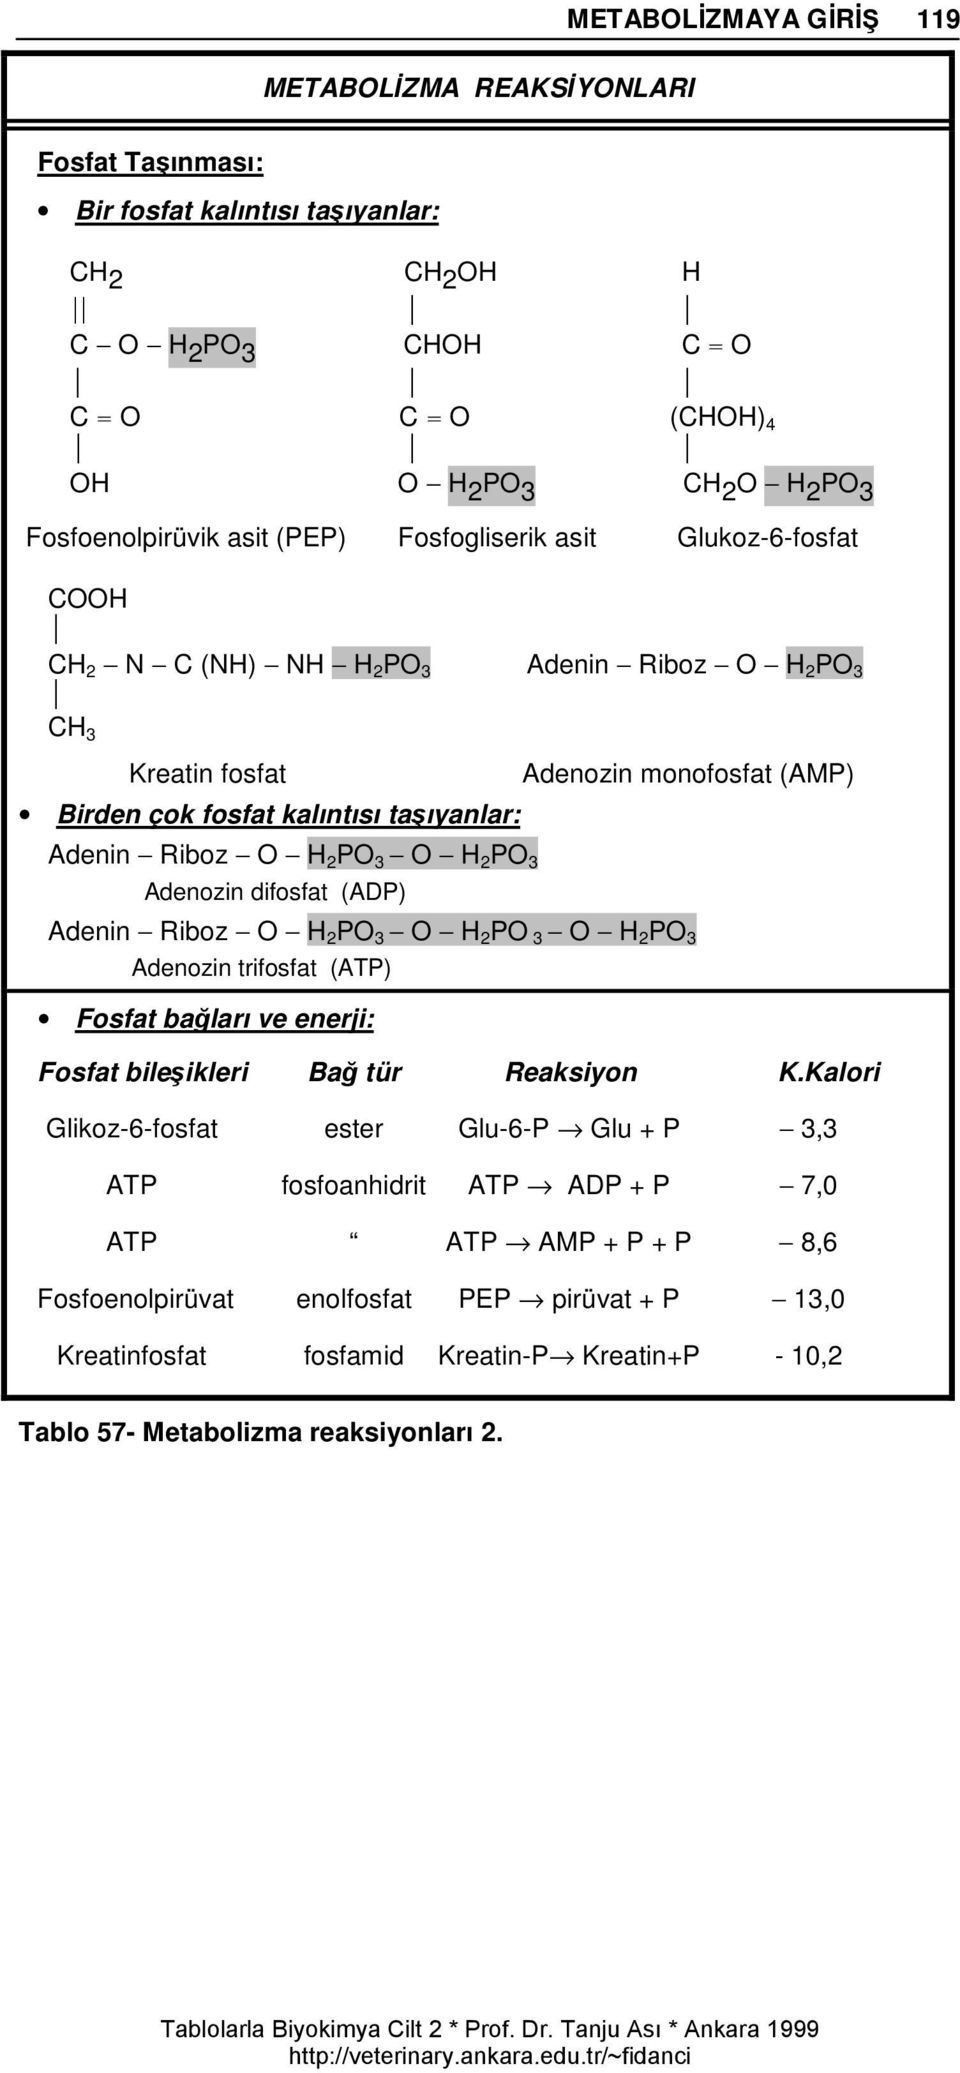 3 O H 2 PO 3 Adenozin difosfat (ADP) Adenozin monofosfat (AMP) Adenin Riboz O H 2 PO 3 O H 2 PO 3 O H 2 PO 3 Adenozin trifosfat (ATP) Fosfat bağları ve enerji: Fosfat bileşikleri Bağ tür Reaksiyon K.